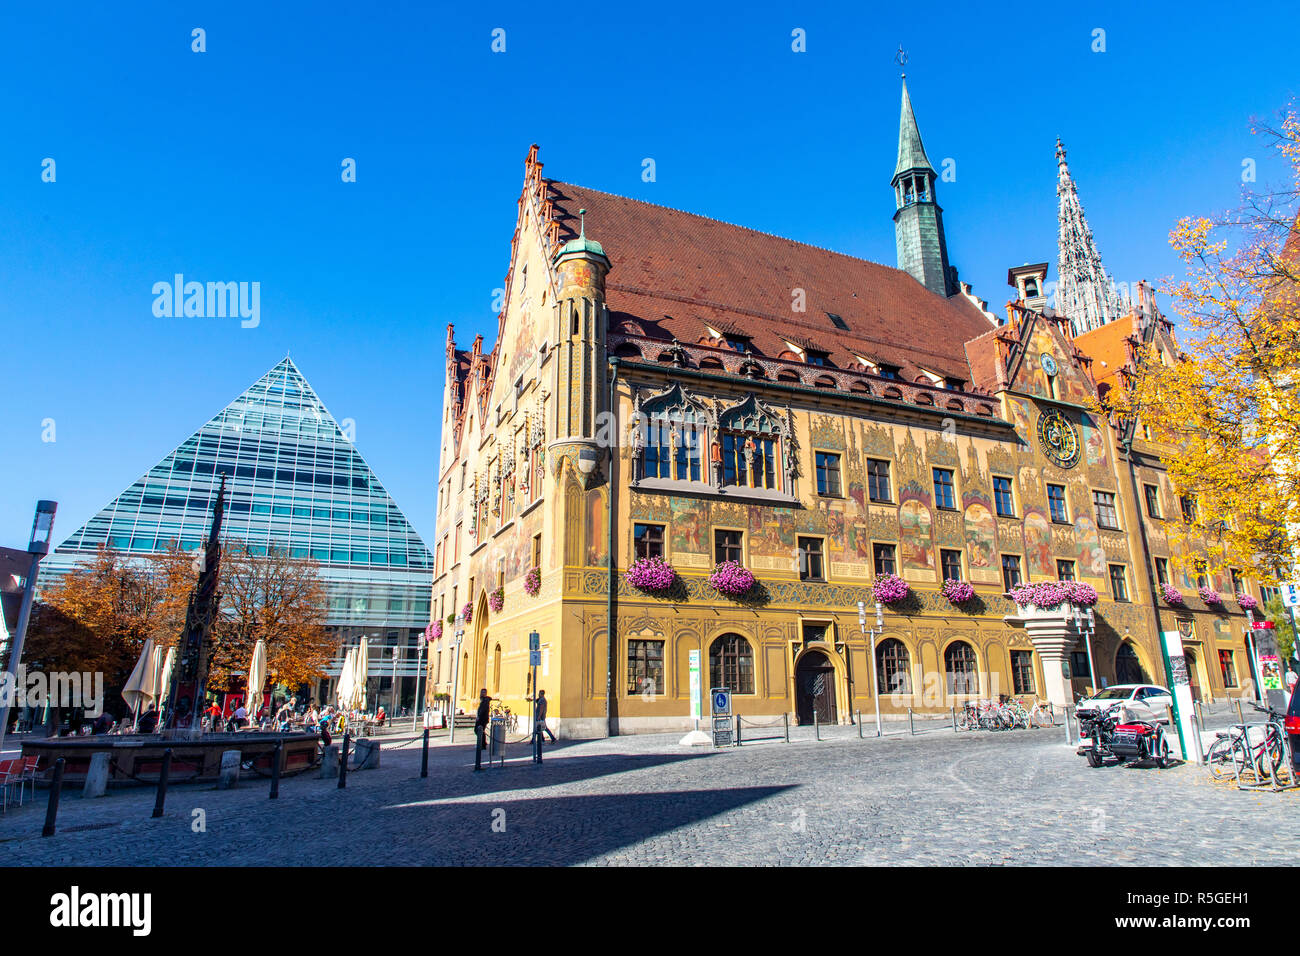 Edificio moderno, piramide della nuova biblioteca della città, il municipio storico, contrasti in architettura, Ulm, Germania, Foto Stock